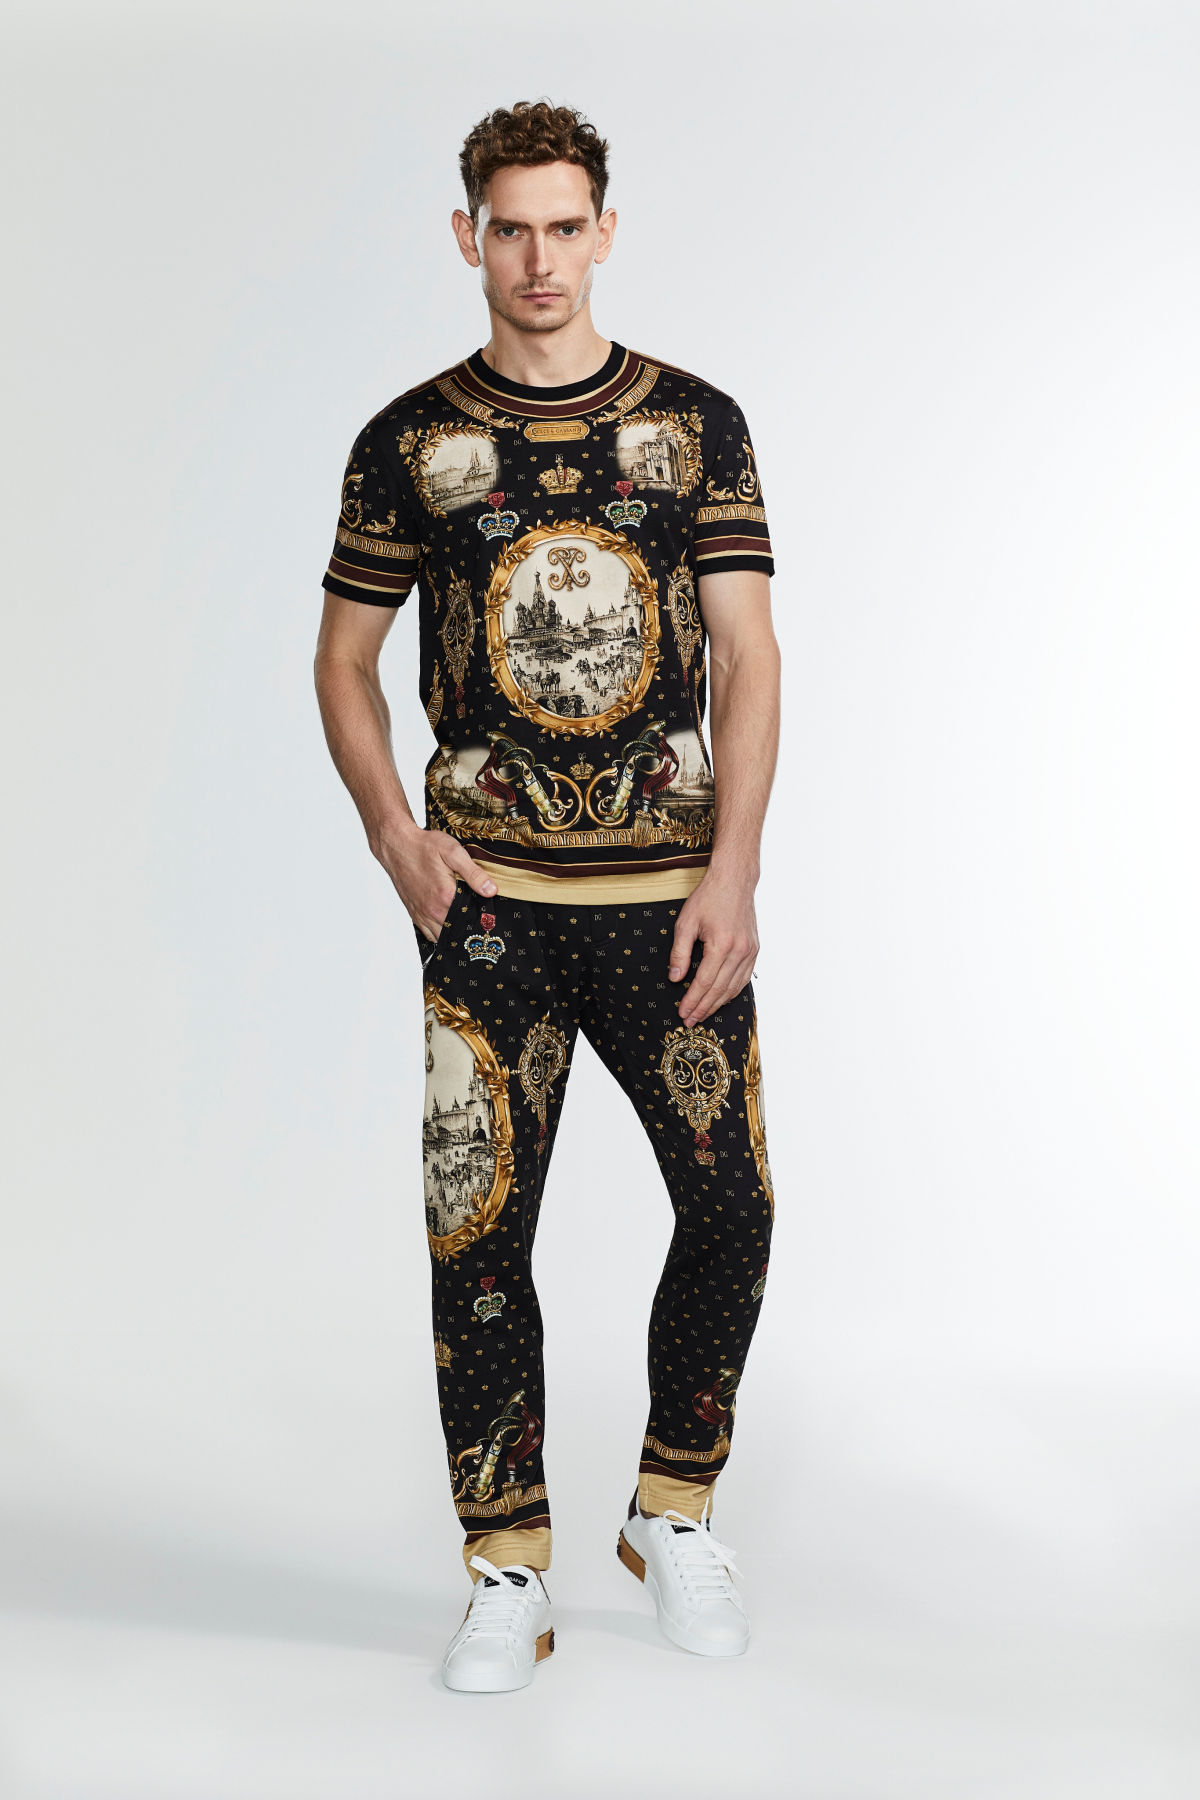 Dolce&Gabbana представил мужскую коллекцию, созданную специально для российского рынка (фото 1)